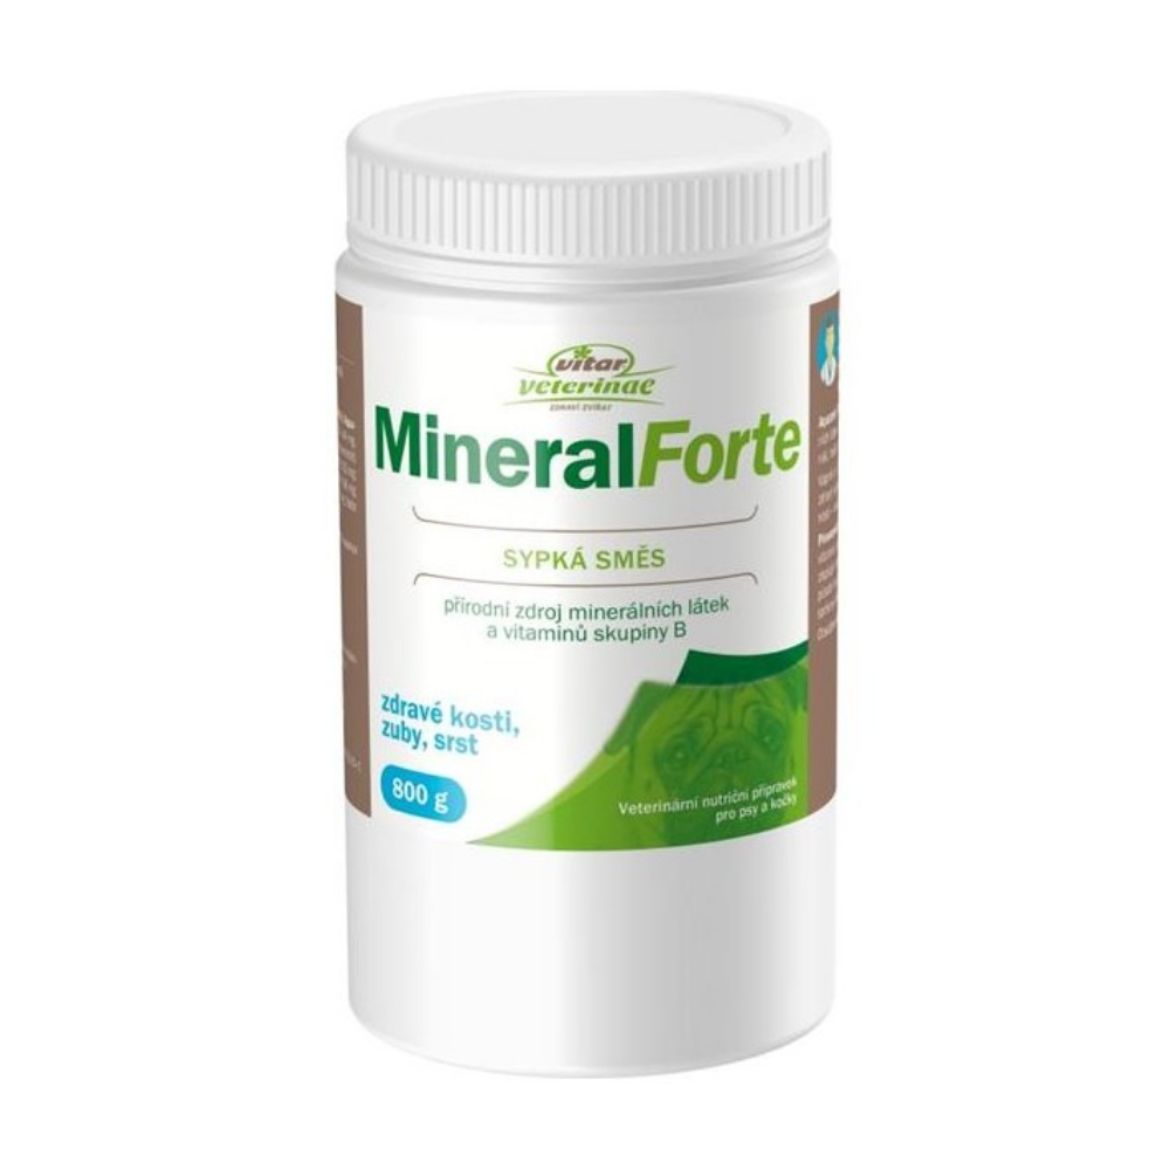 Obrázek z Vitar veterinae Mineral Forte 800 g 